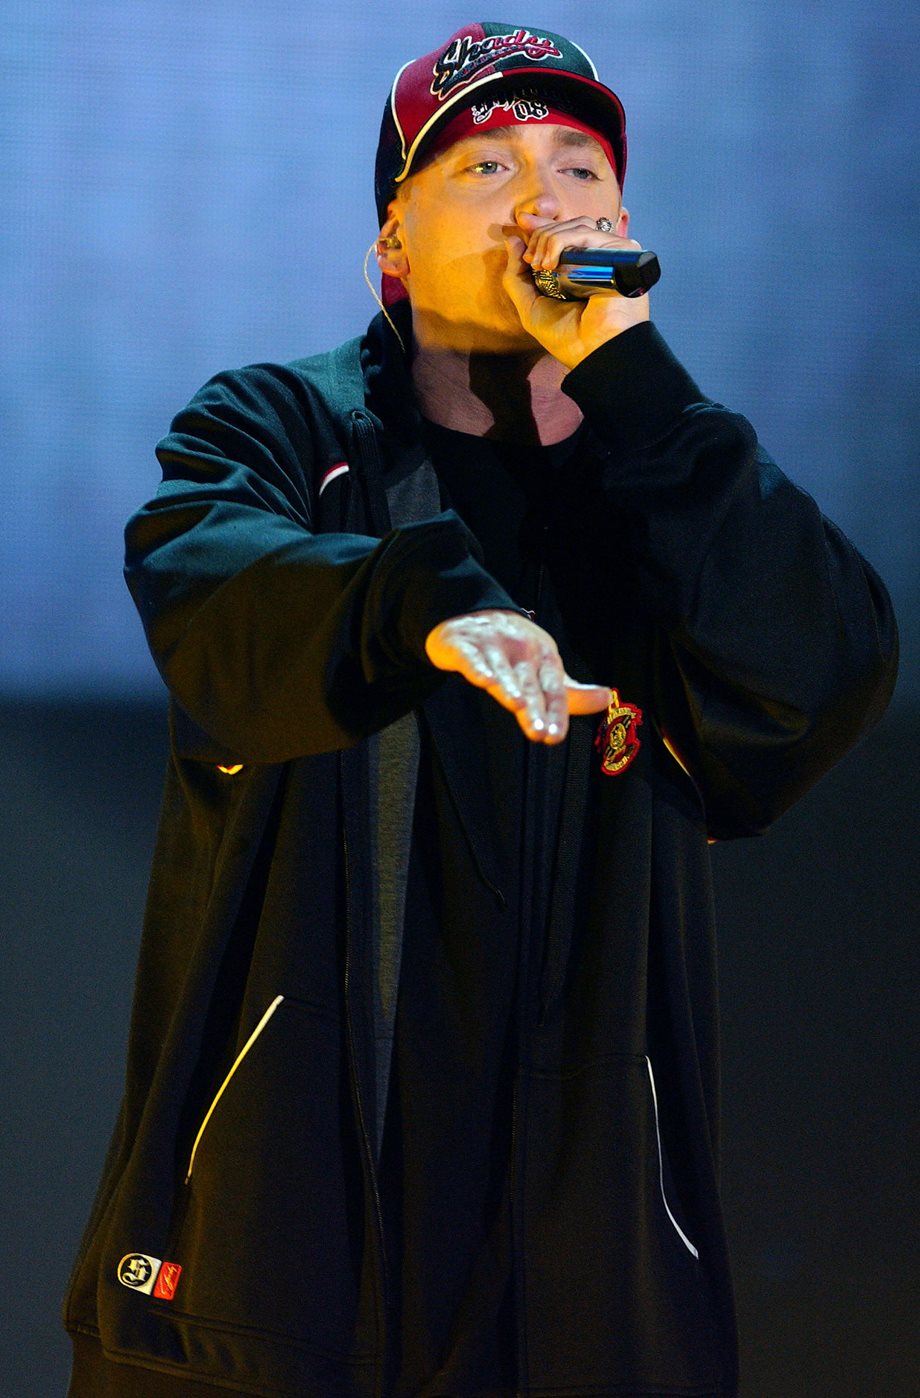 Ο Eminem γιόρτασε δέκα χρόνια απεξάρτησης από τις ουσίες! 